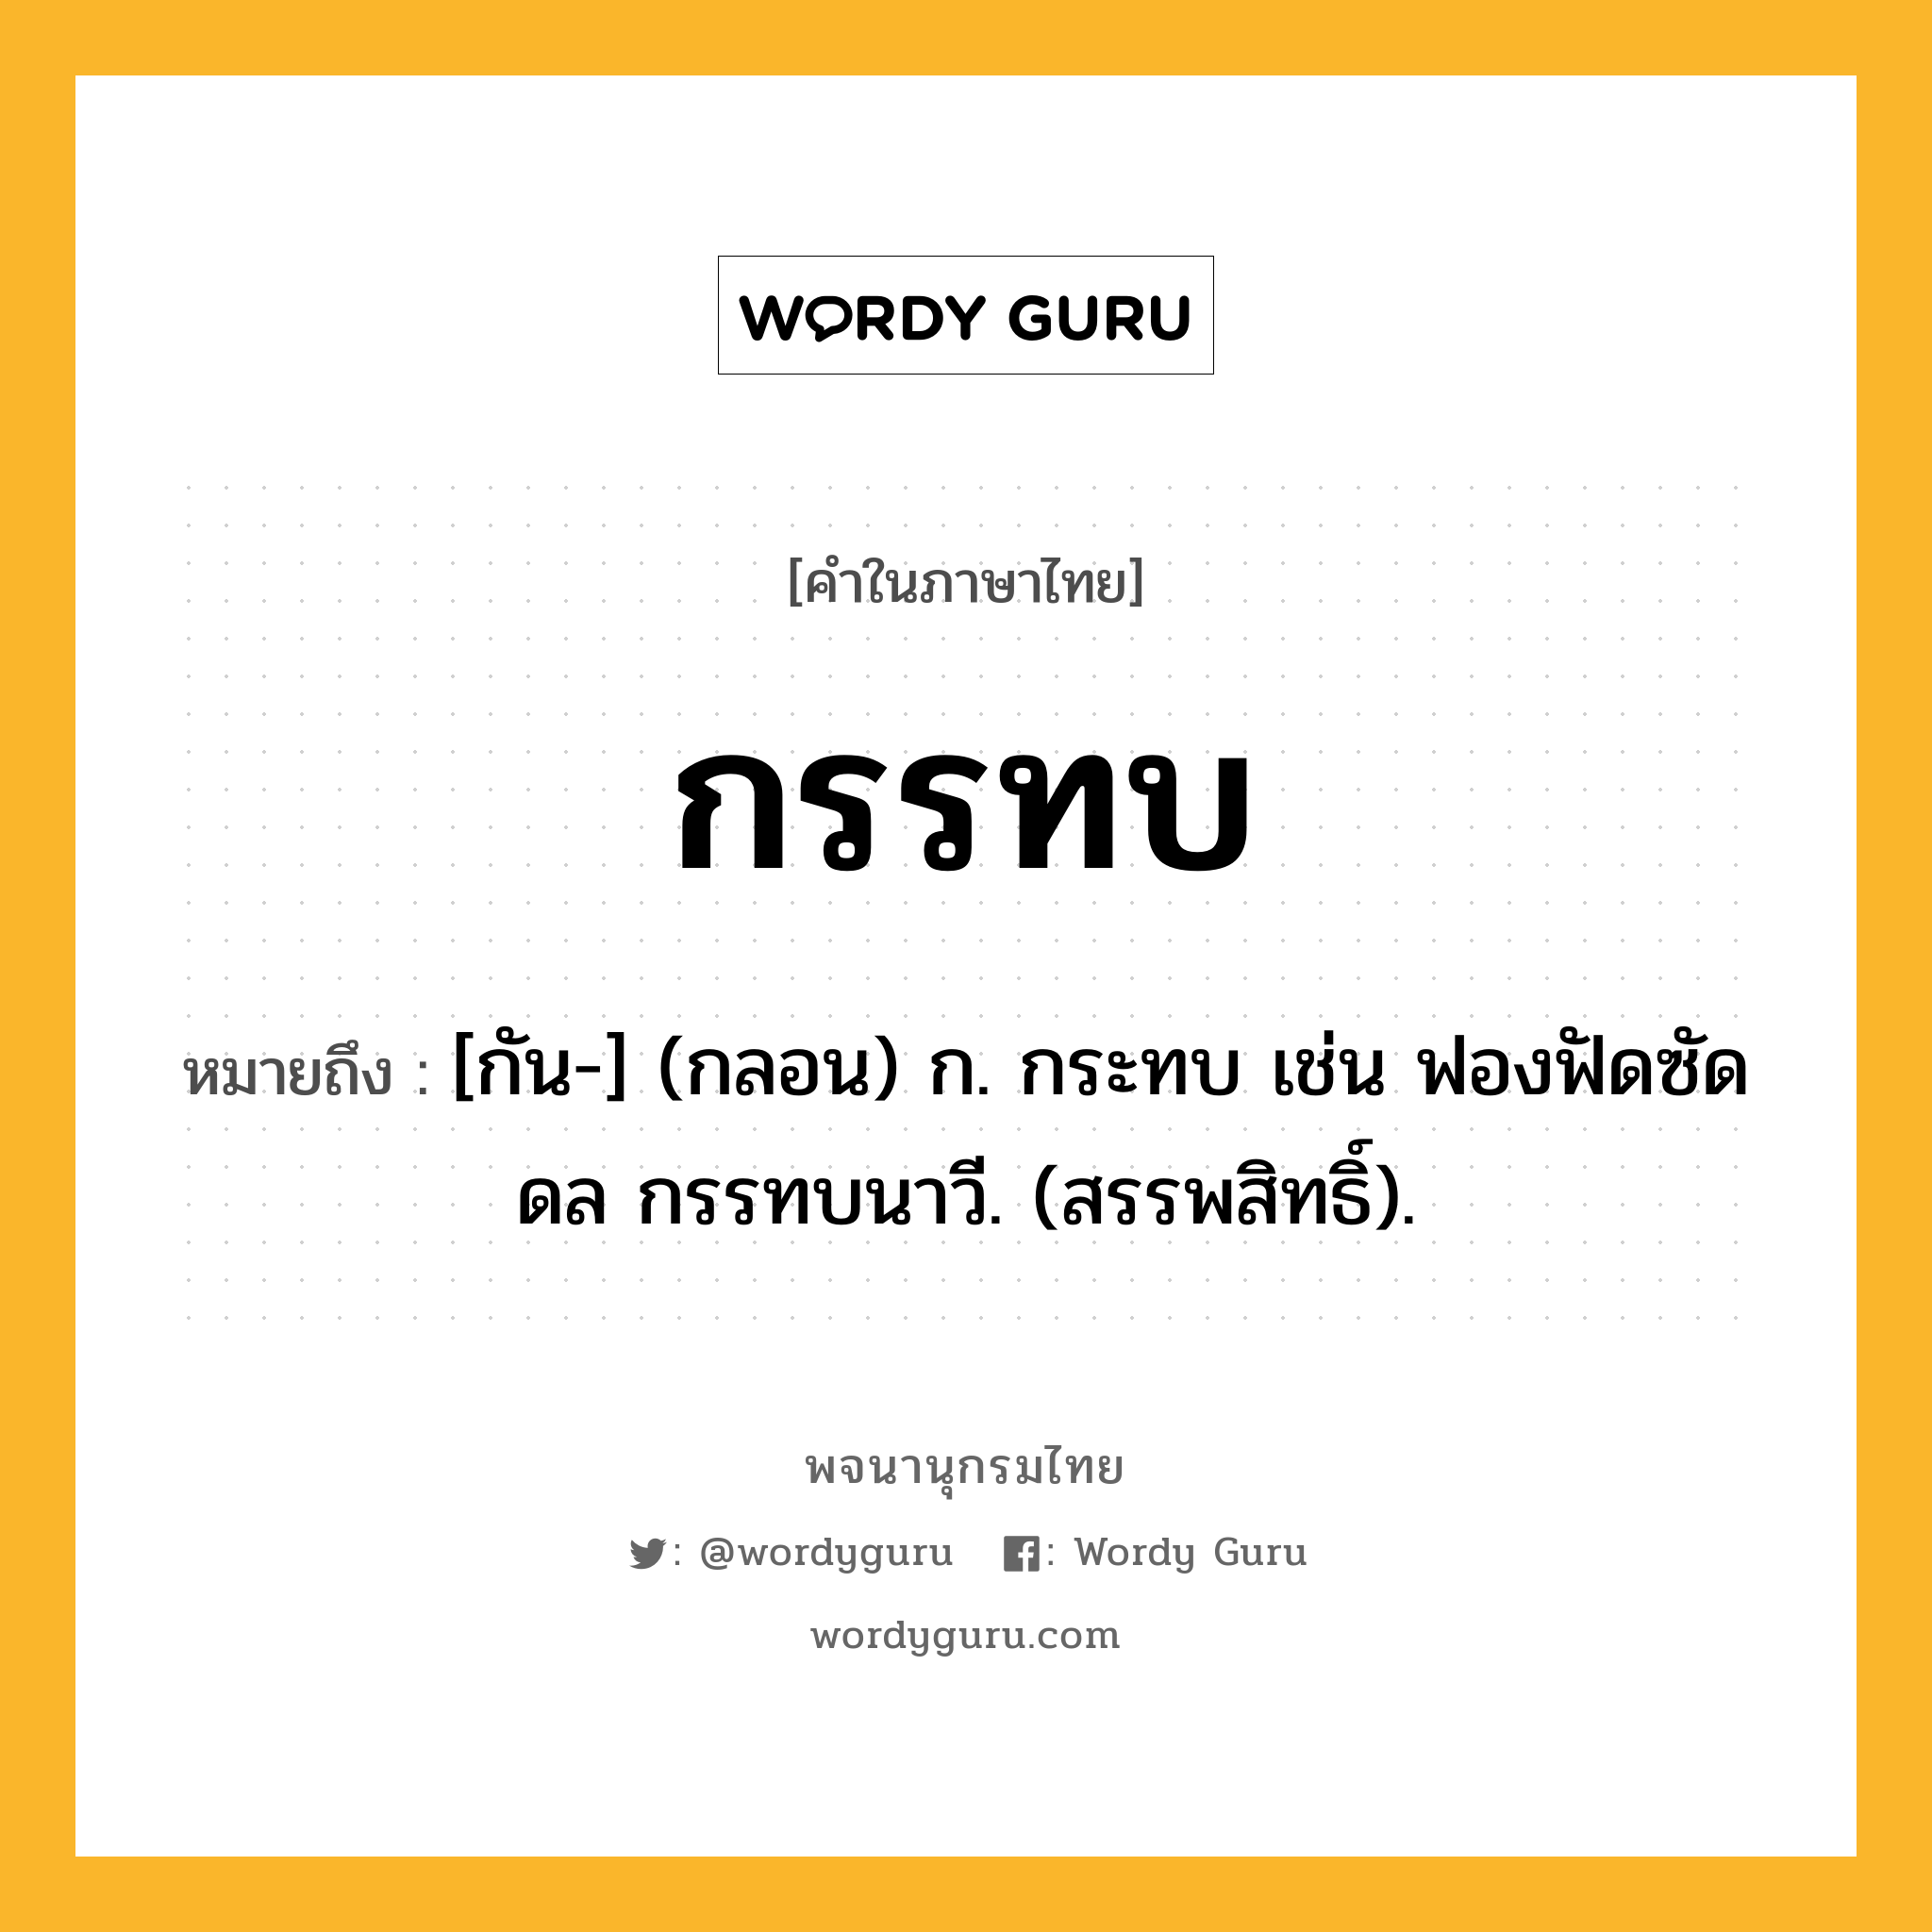 กรรทบ ความหมาย หมายถึงอะไร?, คำในภาษาไทย กรรทบ หมายถึง [กัน-] (กลอน) ก. กระทบ เช่น ฟองฟัดซัดดล กรรทบนาวี. (สรรพสิทธิ์).